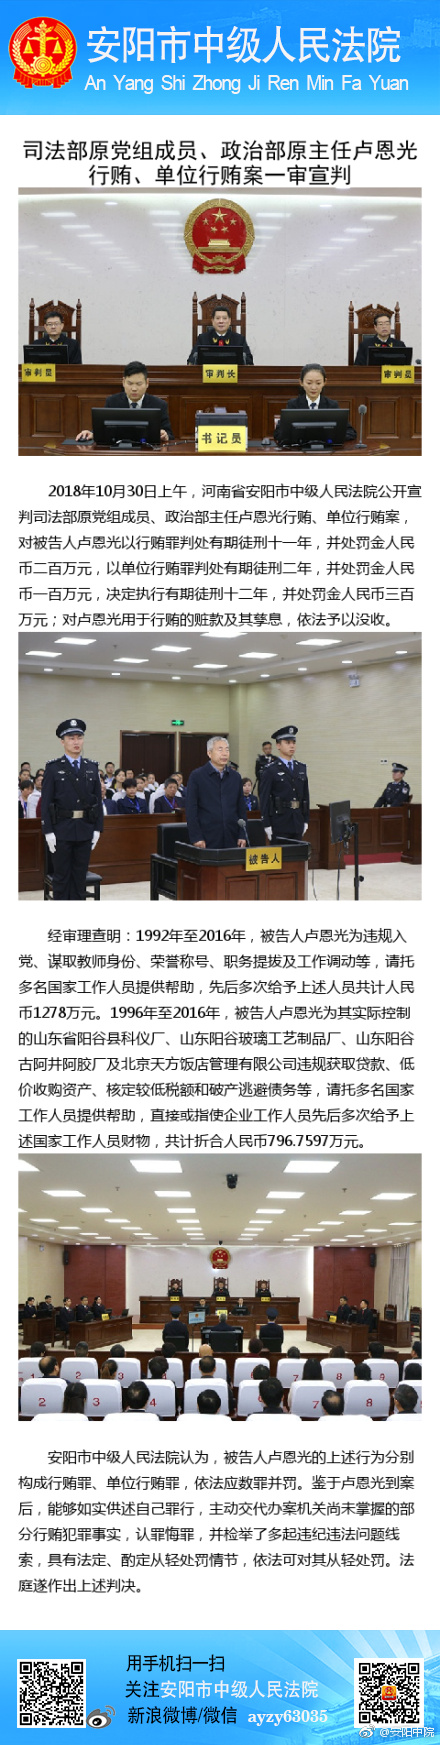 司法部原政治部主任卢恩光被判12年